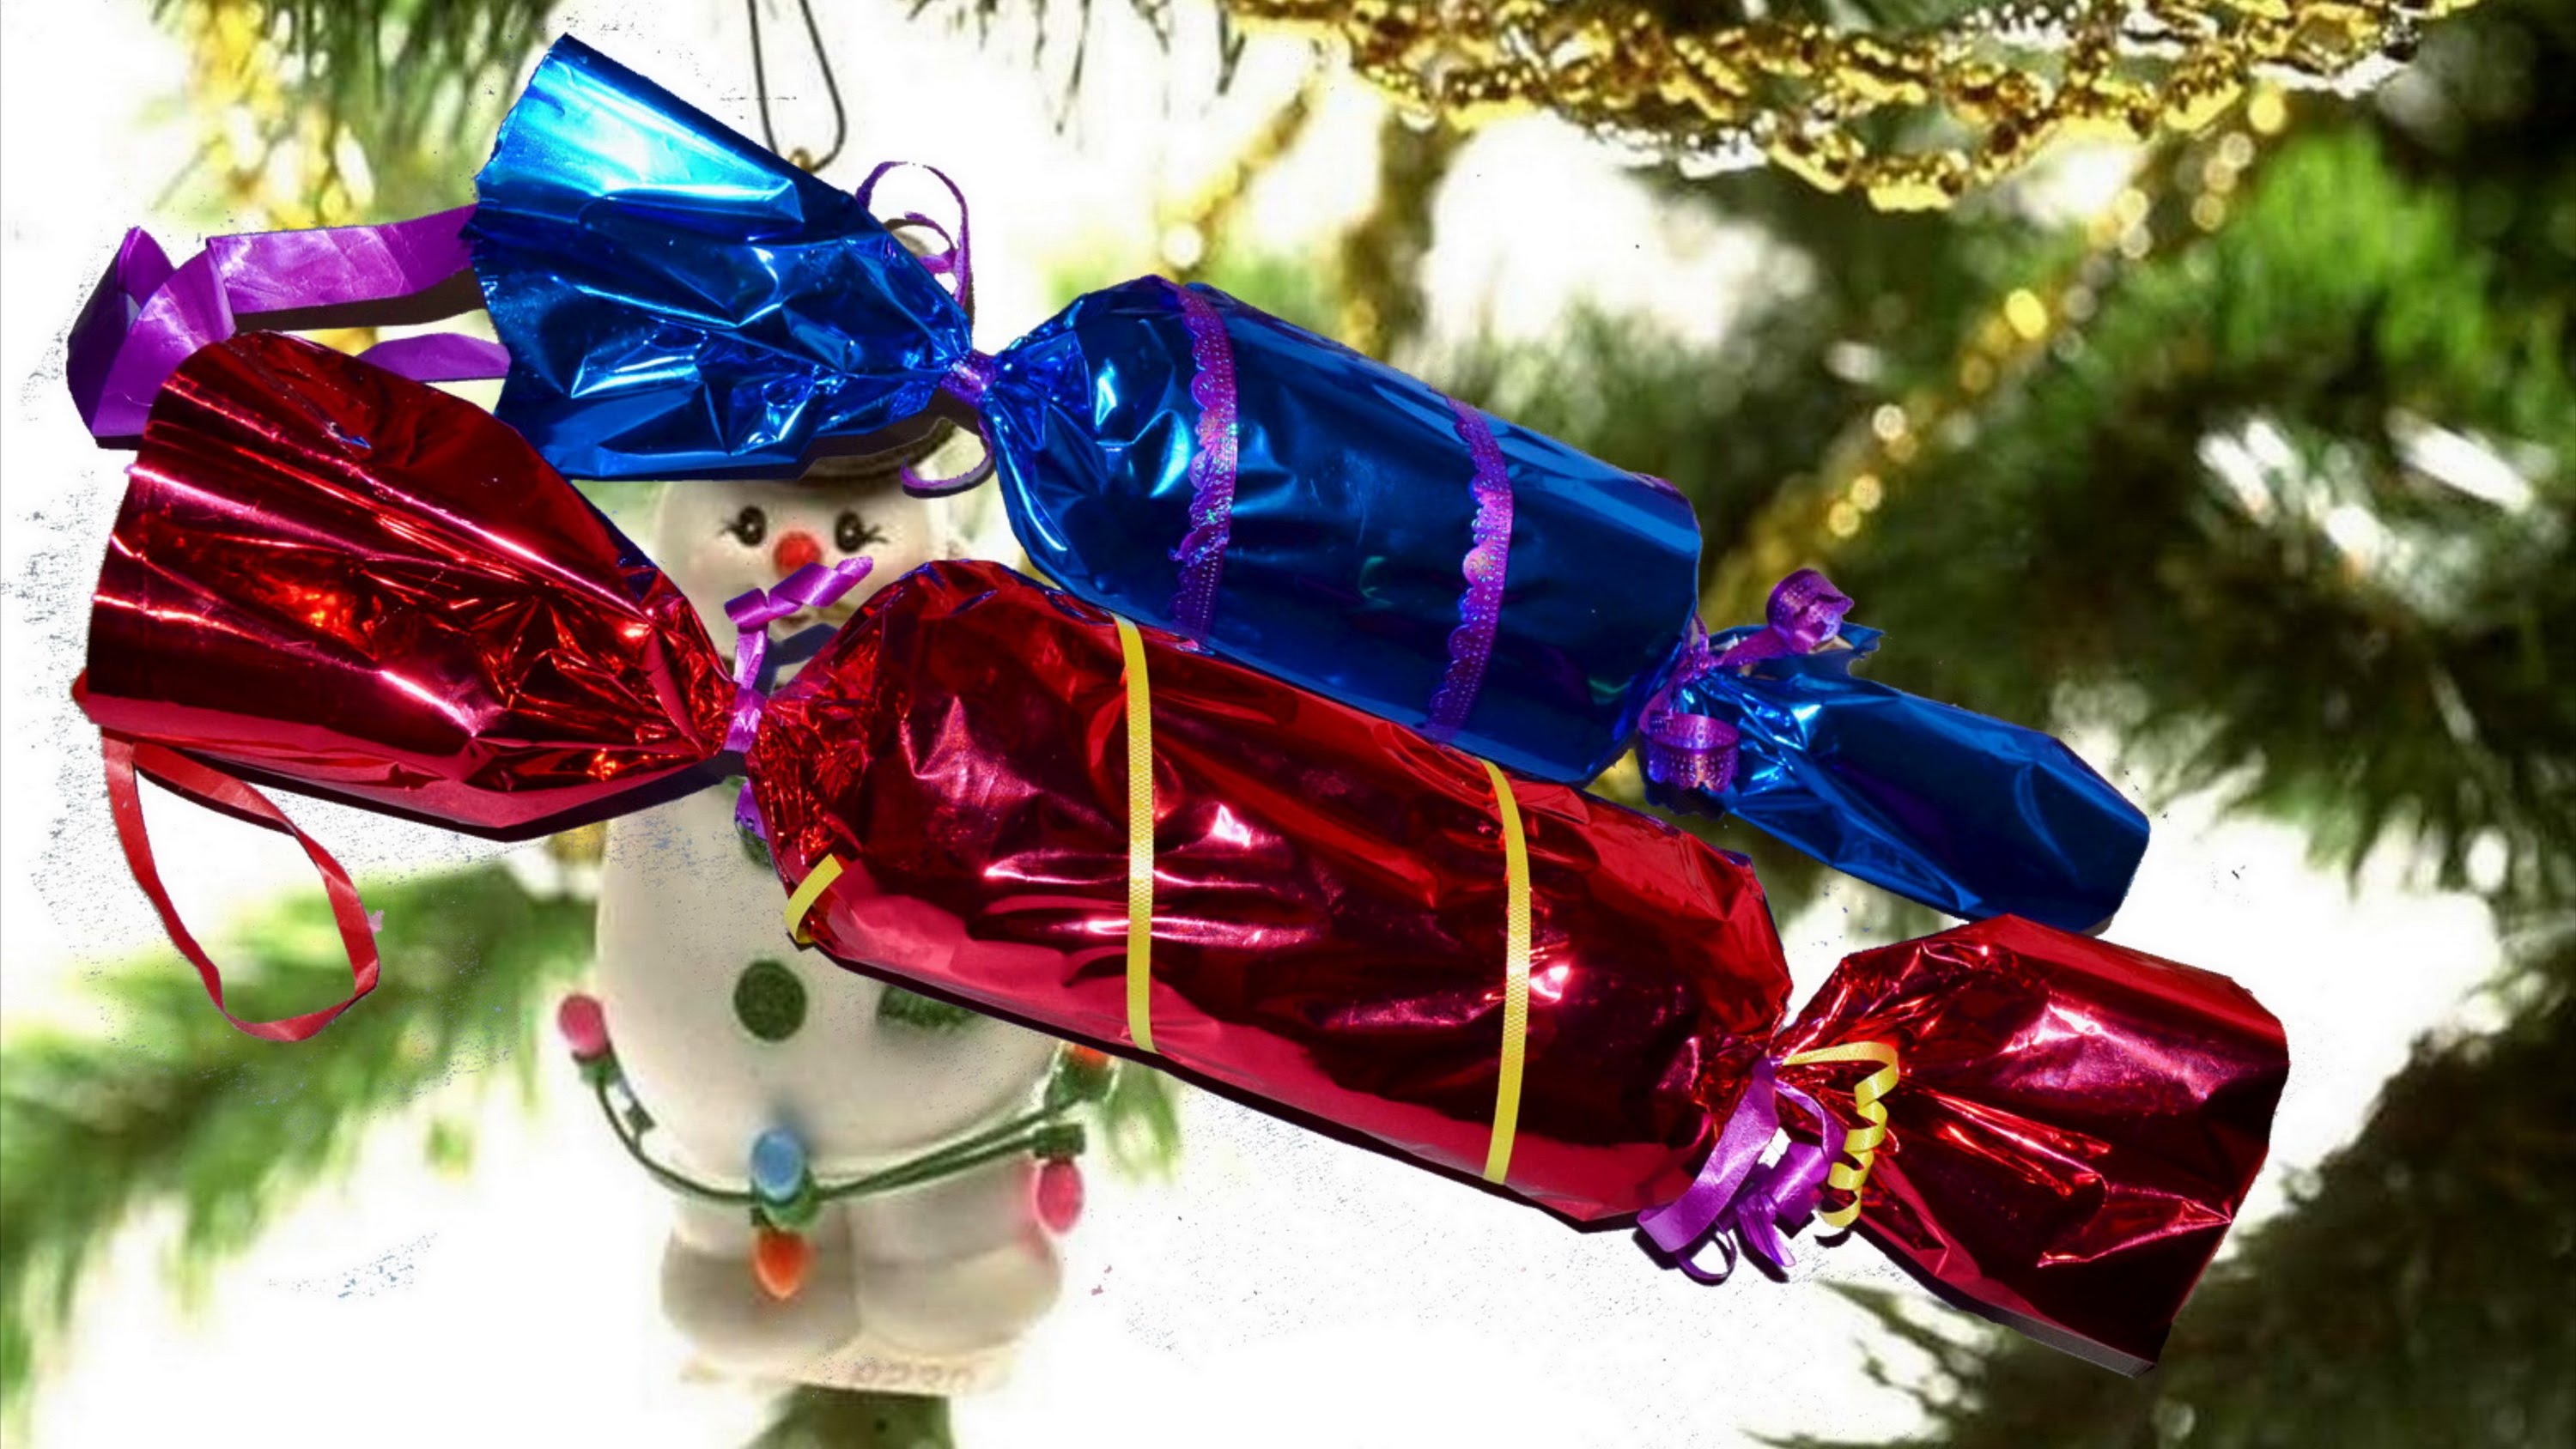 Конфета новогодняя: Конфеты в подарок на Новый Год 2019 - большой каталог с фото, купить новогодние конфеты в интернет-магазине сладких подарков